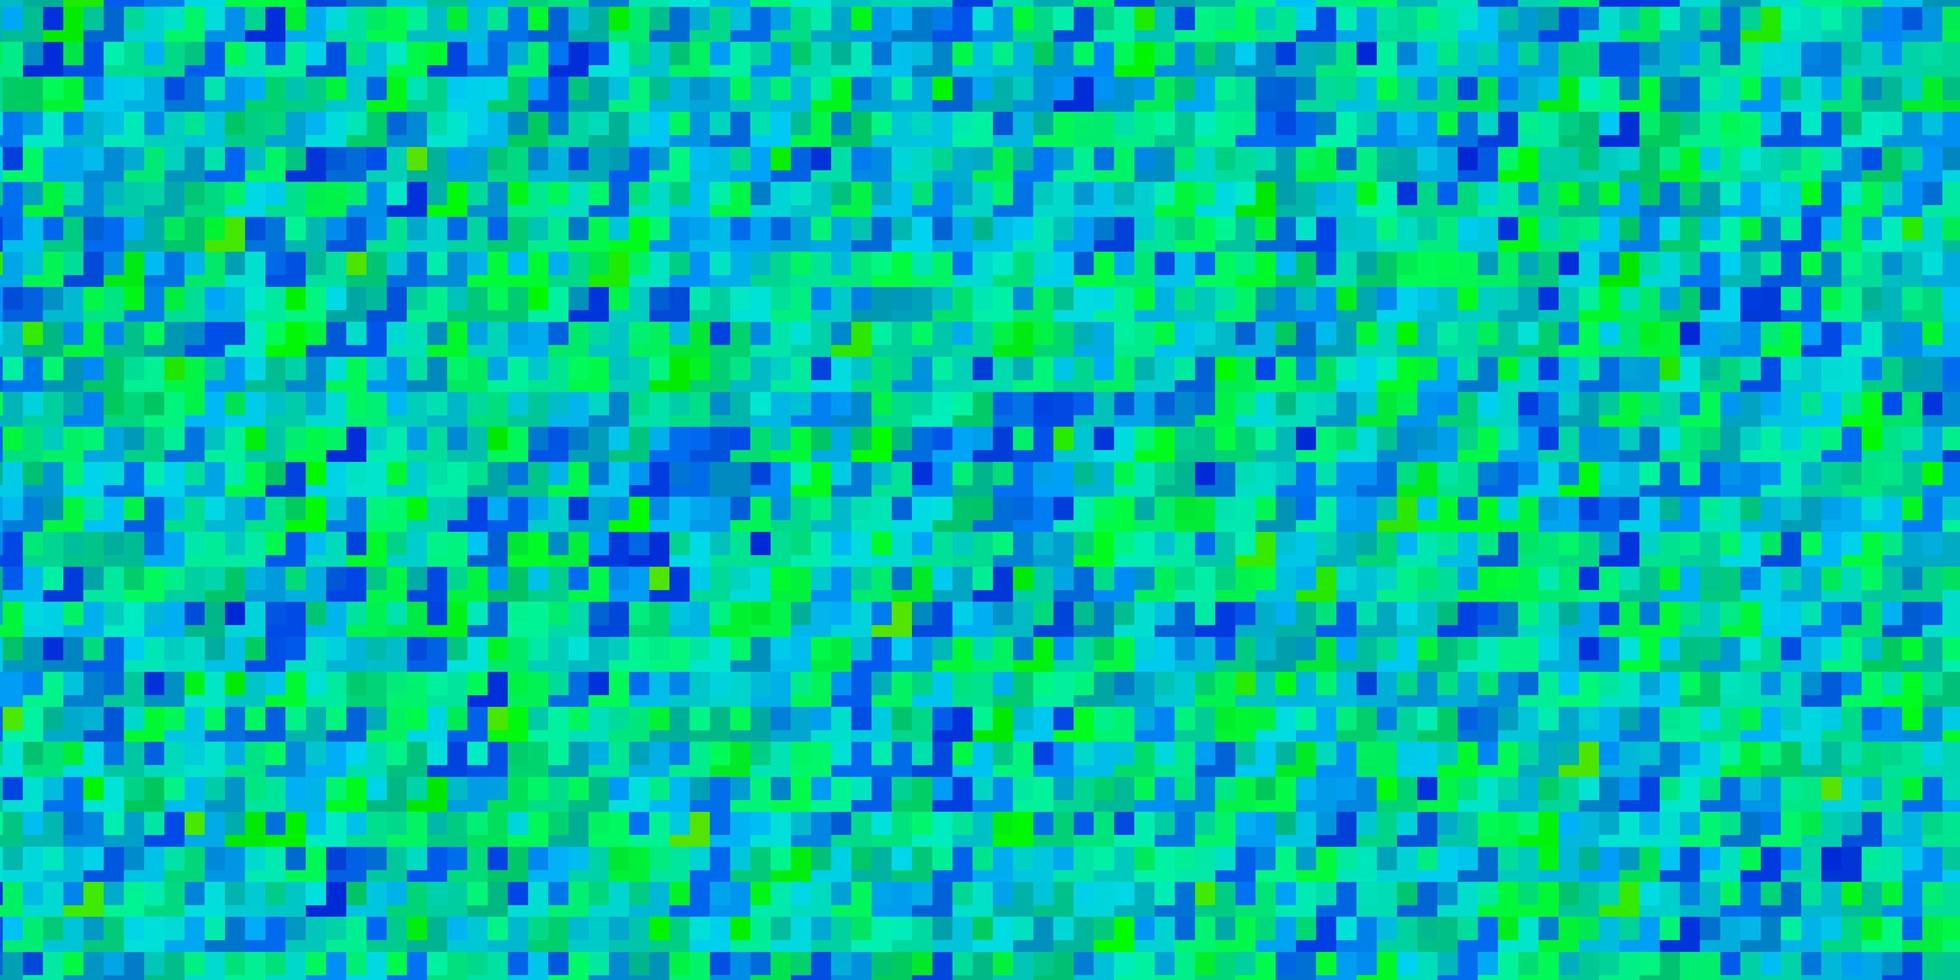 Fondo de vector azul claro, verde con rectángulos